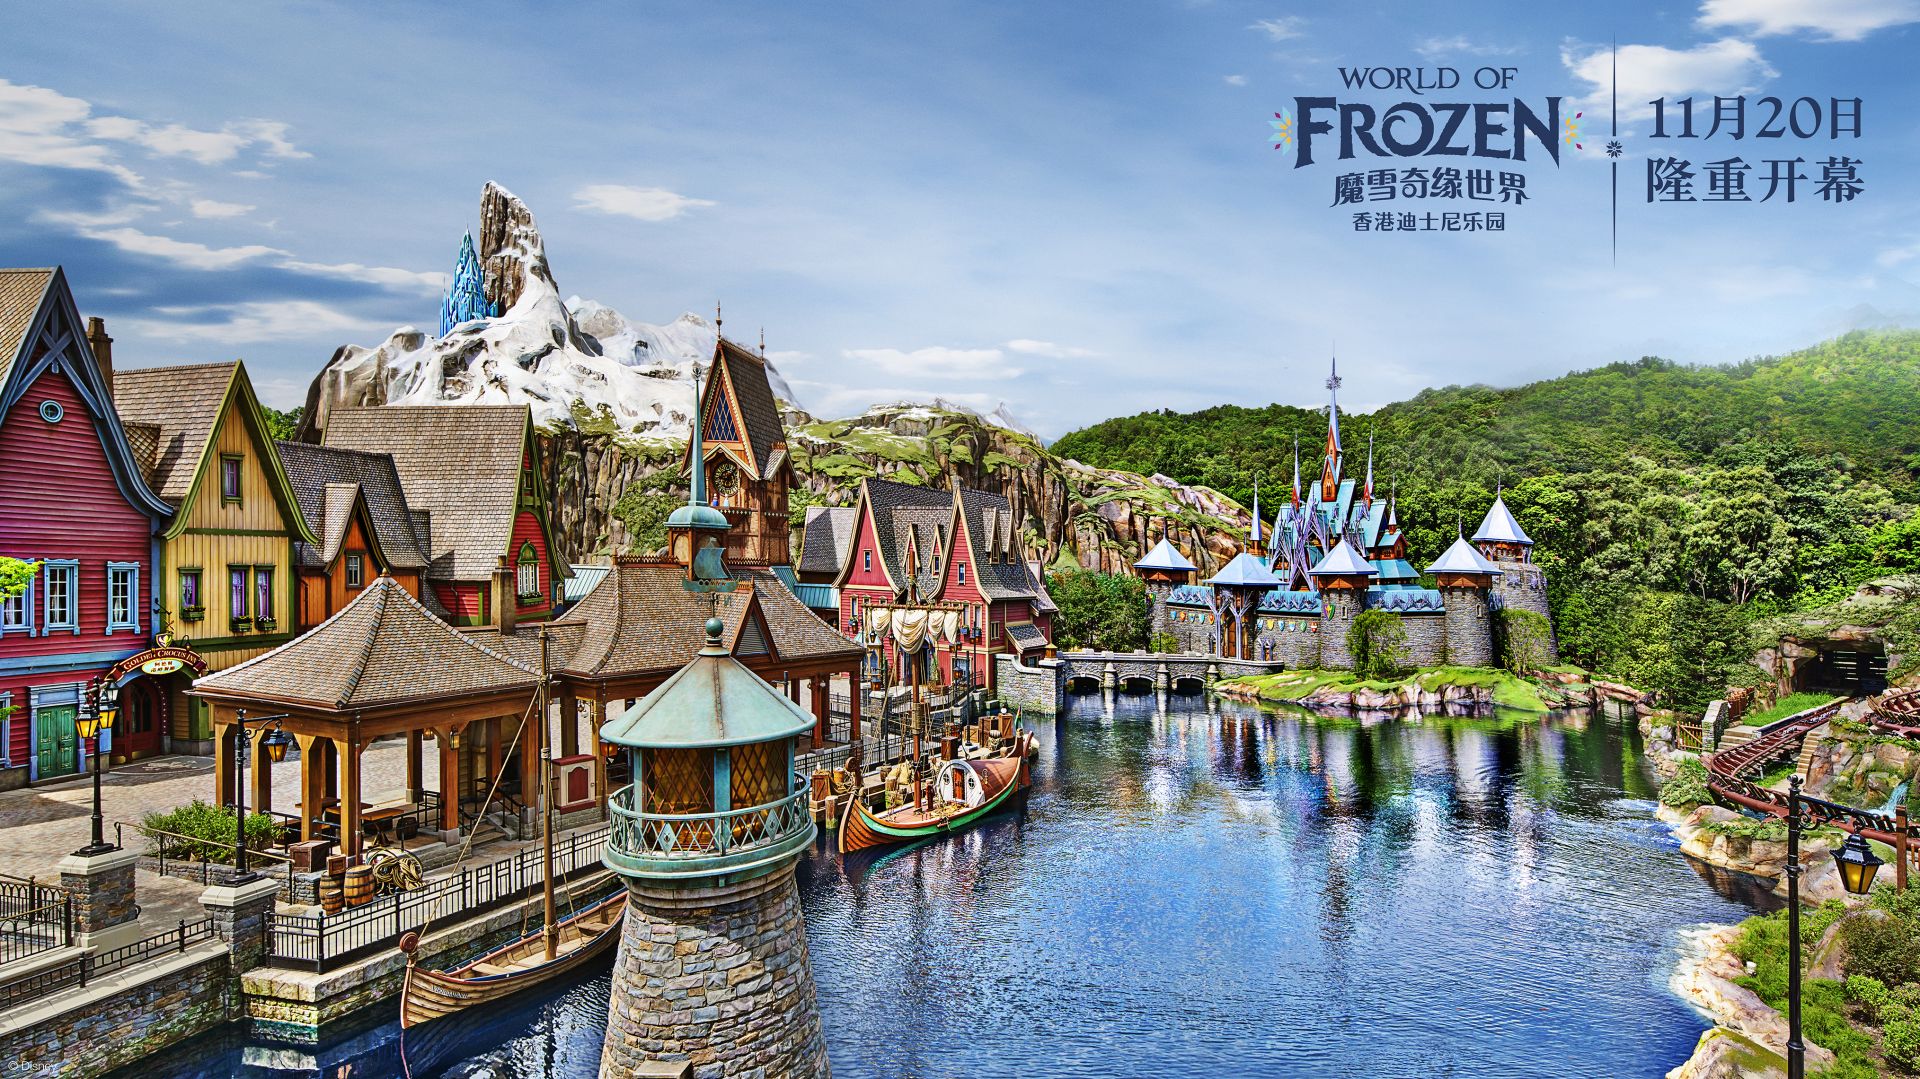 全球首个及最大型的《冰雪奇缘》主题园区——魔雪奇缘世界将于11月20日在香港迪士尼乐园度假区开幕